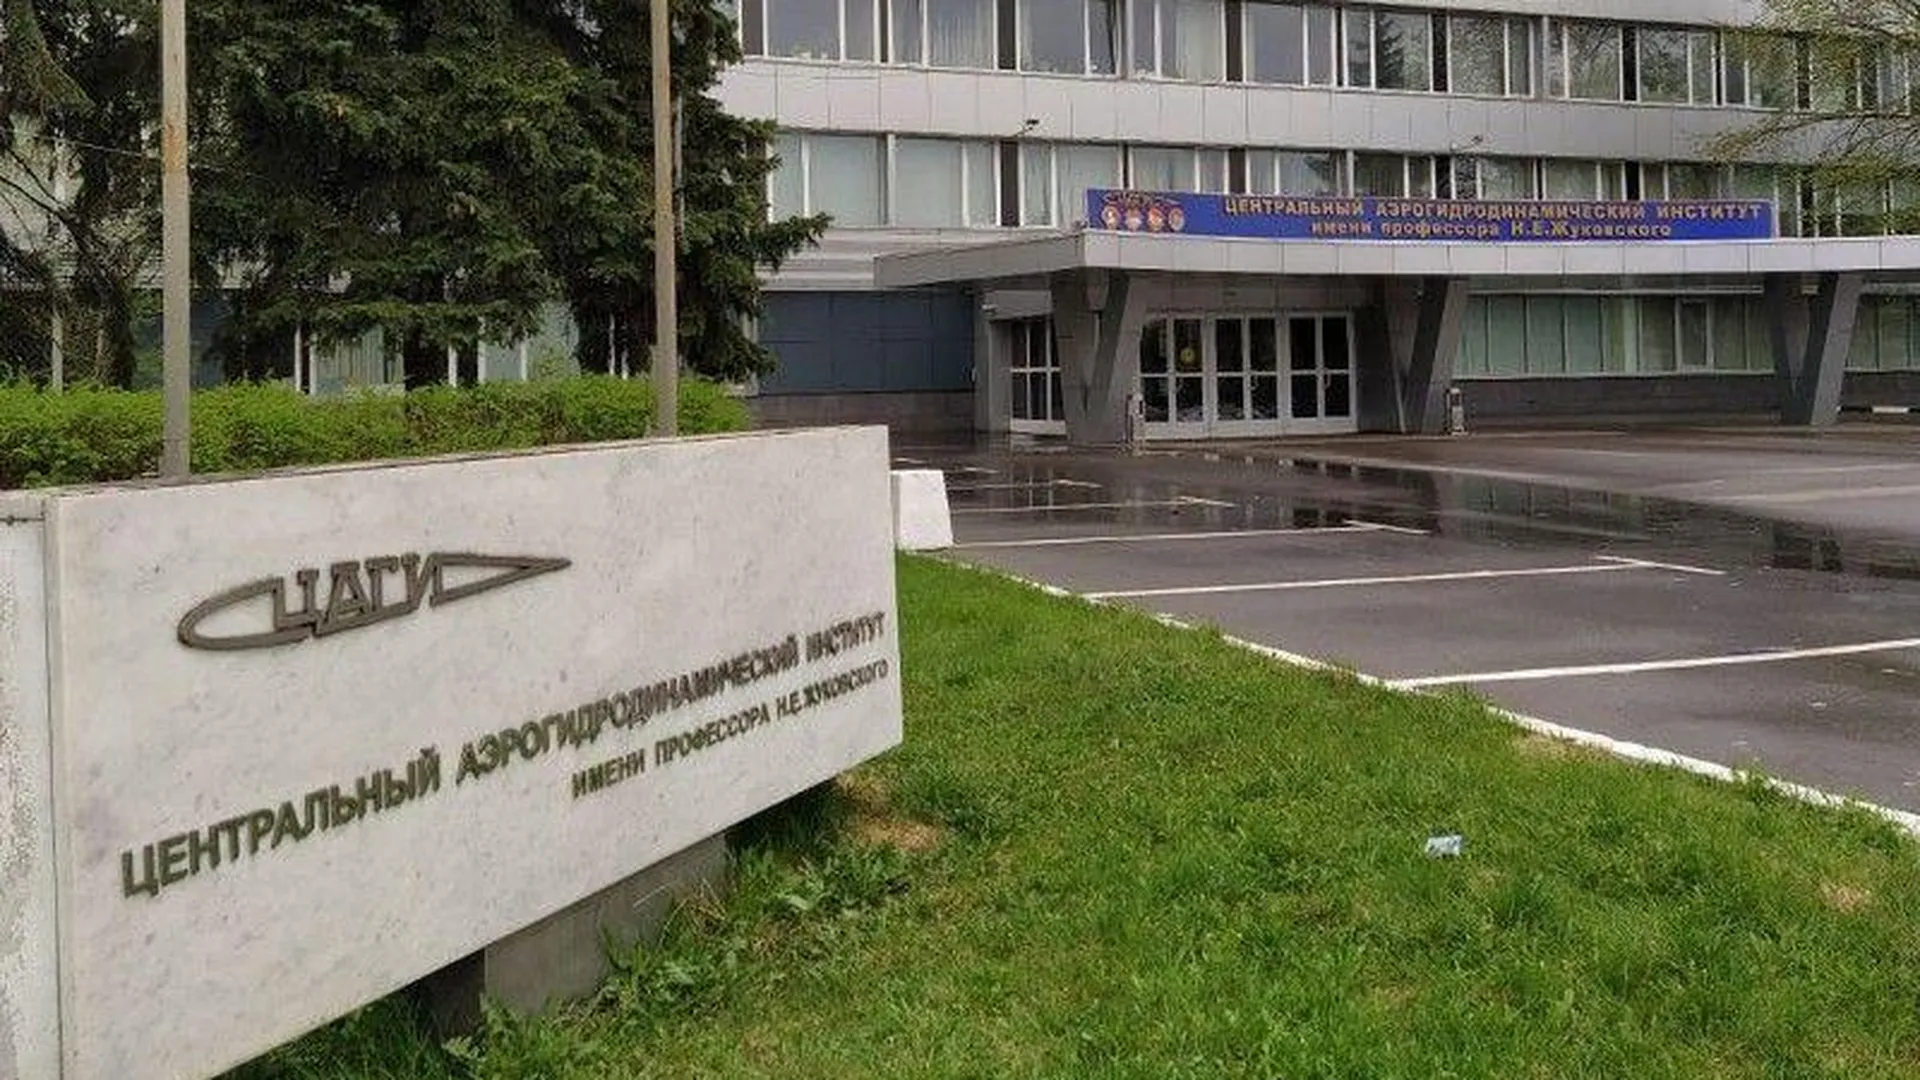 Пресс-служба Министерства инвестиций, промышленности и науки Московской области